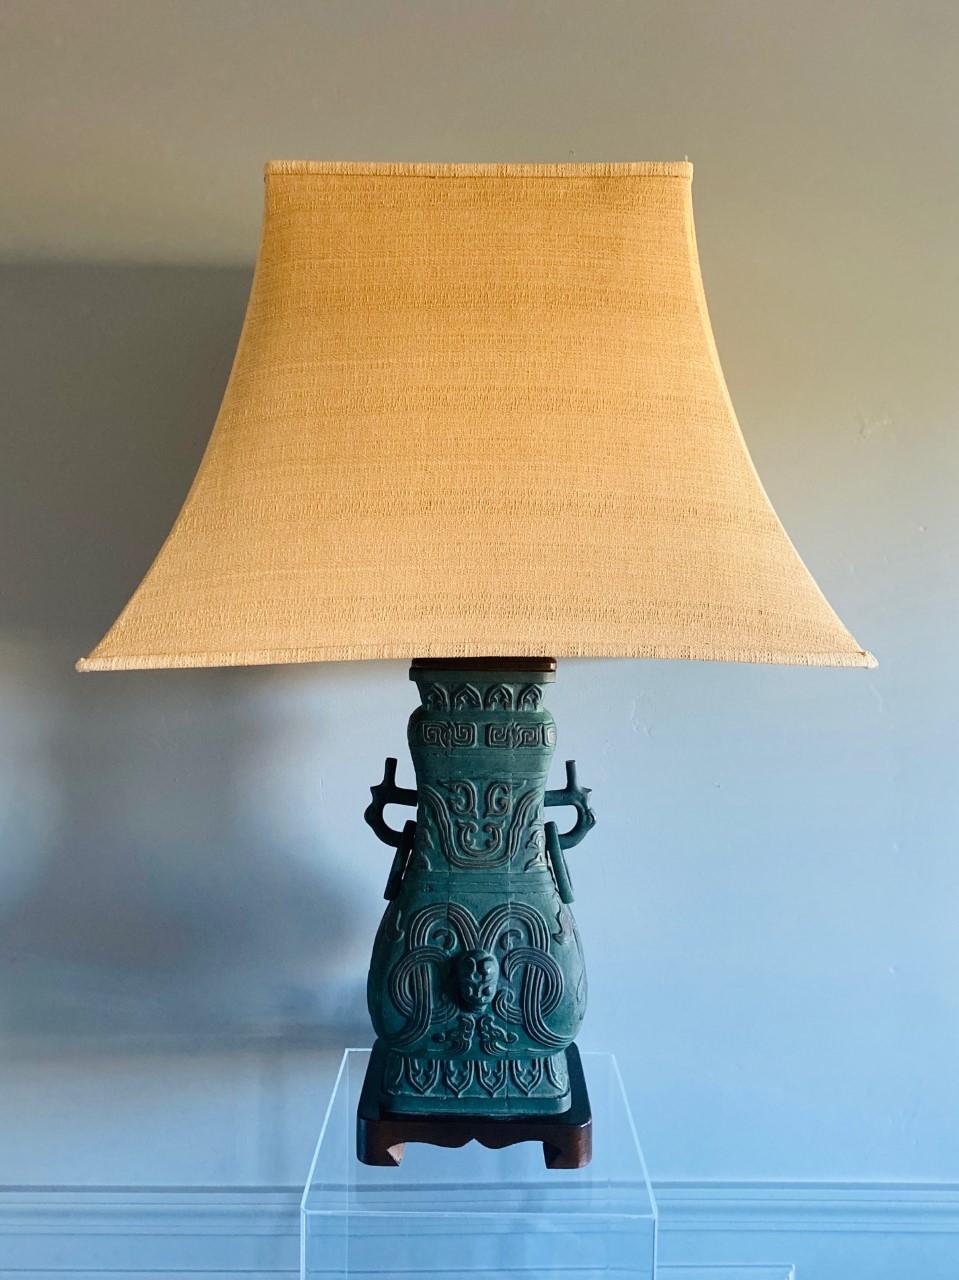 Belle lampe de table vintage en chinoiserie, italienne, milieu du siècle. Cette pièce sculpturale en forme d'urne est faite de bronze moulé et est montée sur une base en bois sculpté. La structure est recouverte d'un motif de chinoiserie en